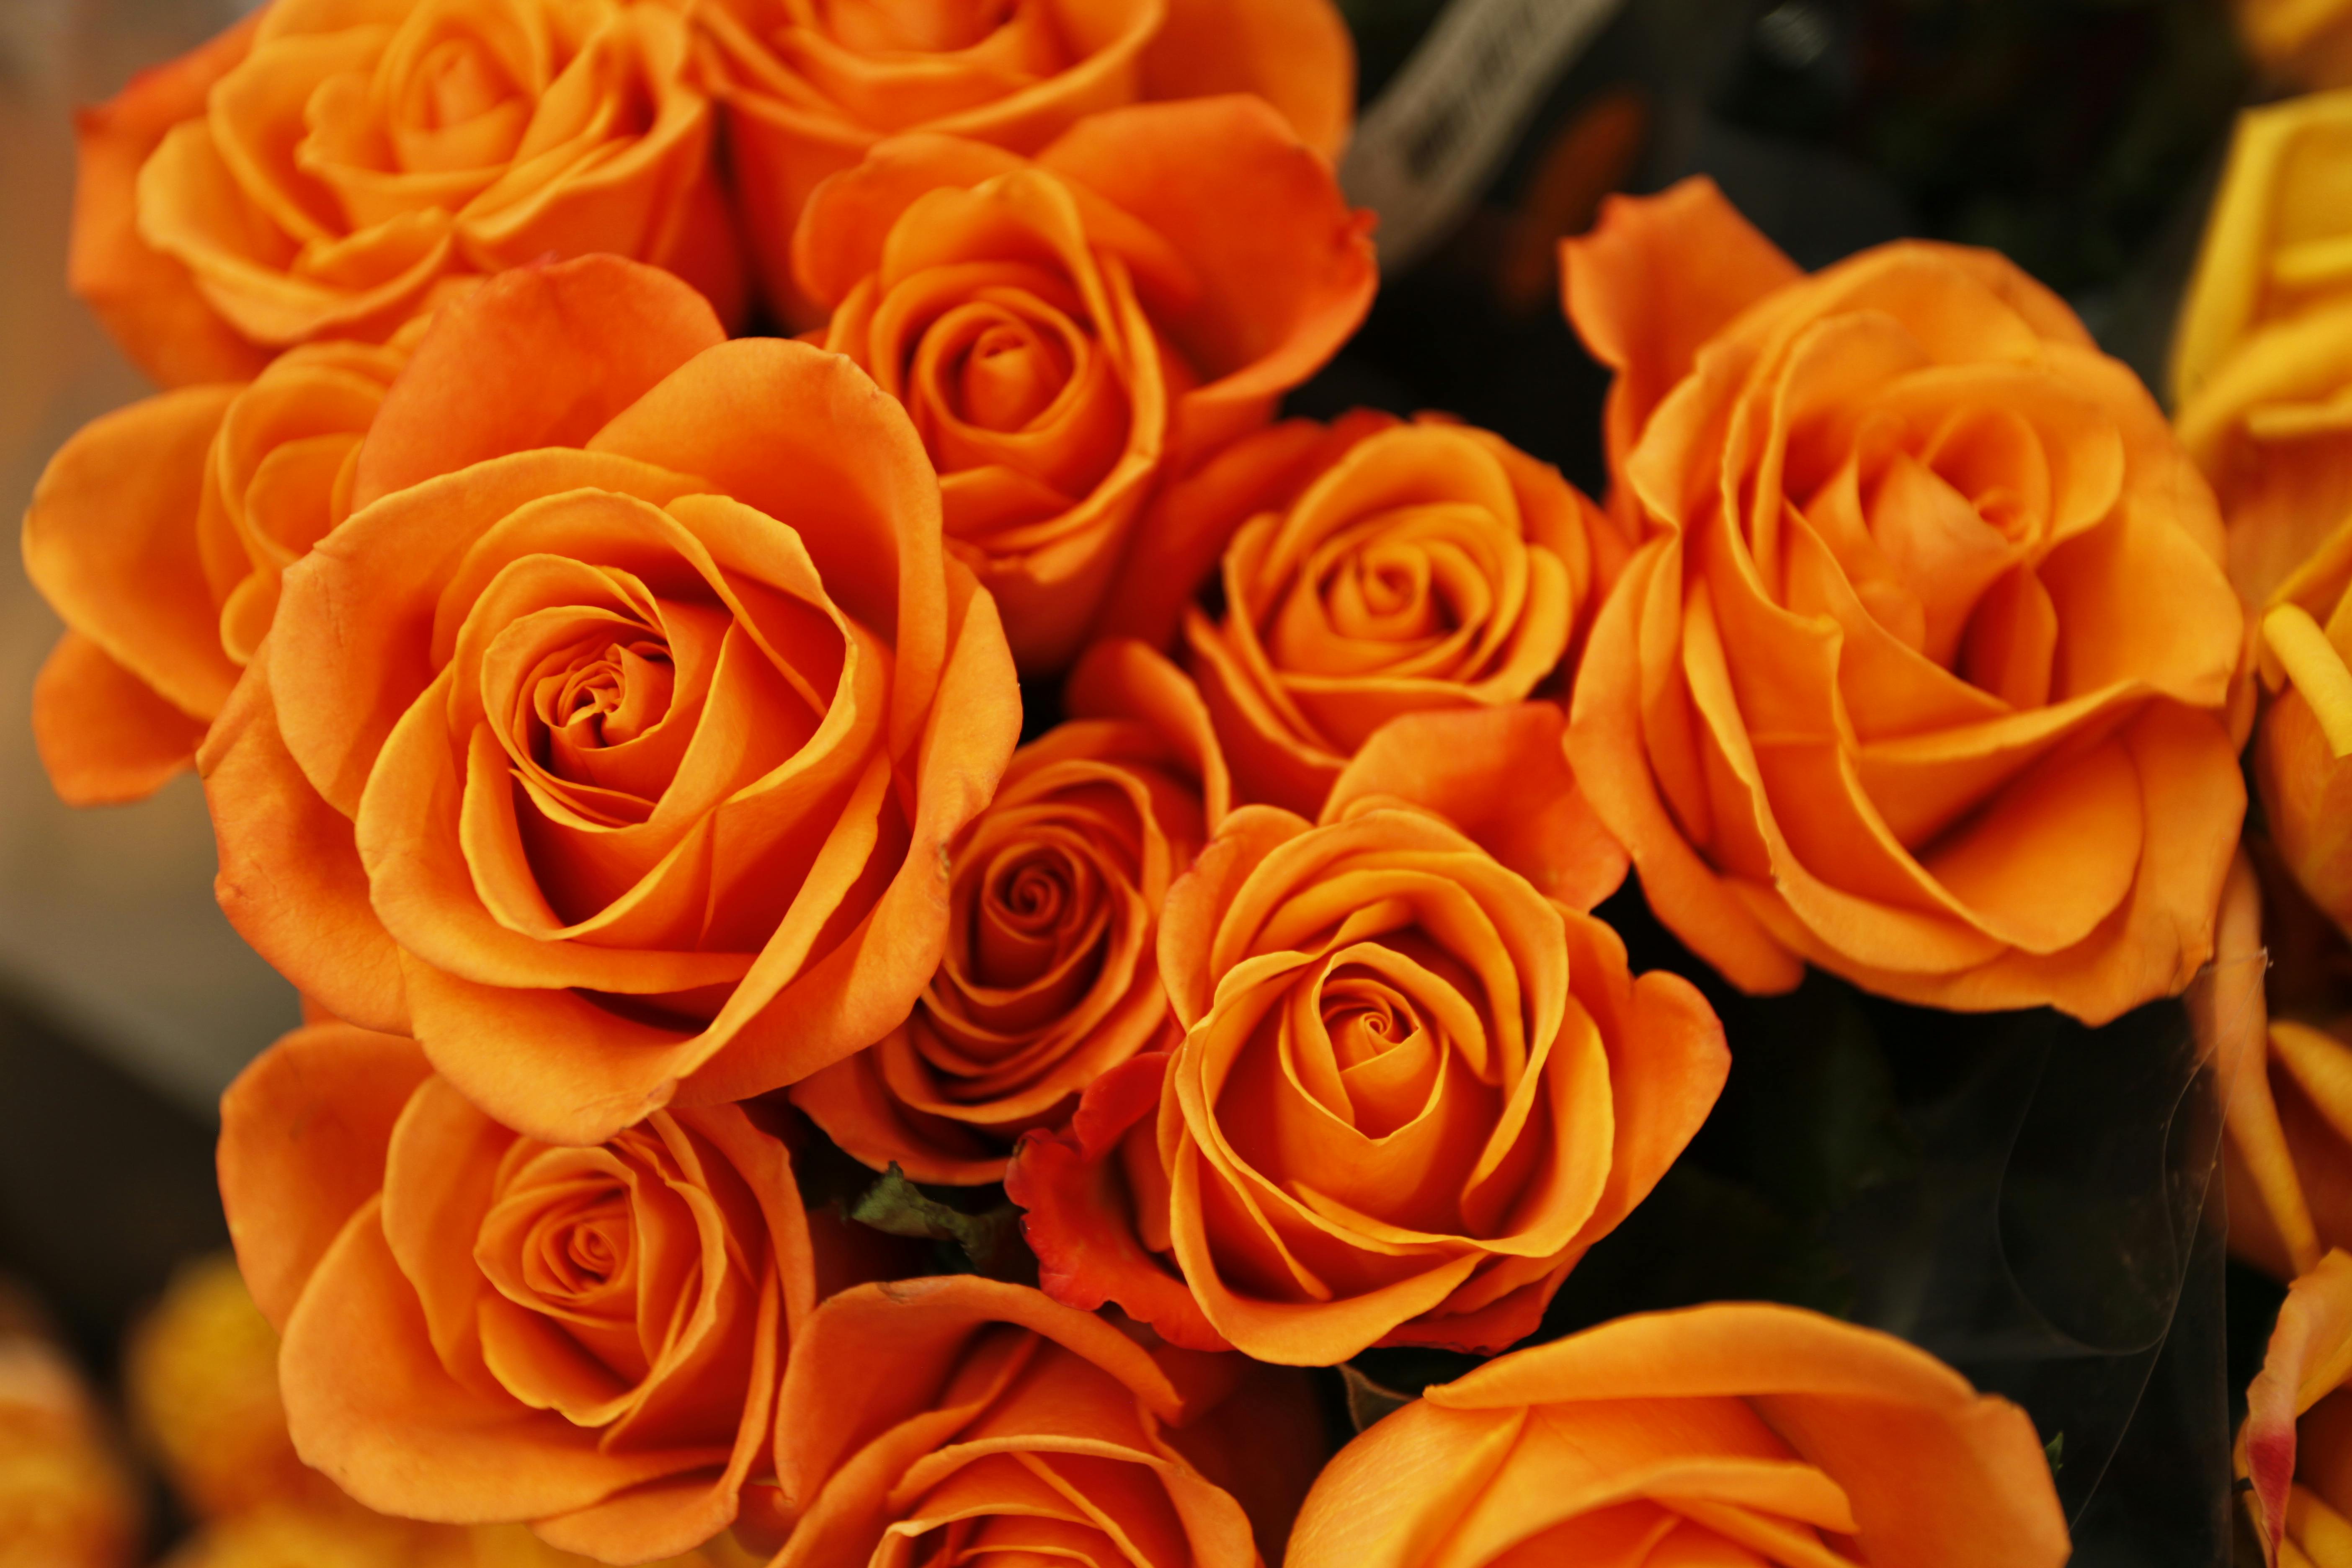 Hình ảnh hoa cam miễn phí này sẽ làm cho bạn say mê với vẻ đẹp đơn giản mà tinh tế của loài hoa này. Bạn sẽ được trải nghiệm và cảm nhận sự thanh tao, tươi mới của hoa cam trong bức hình này. Đây sẽ là một khoảnh khắc tuyệt vời cho tâm hồn của bạn!